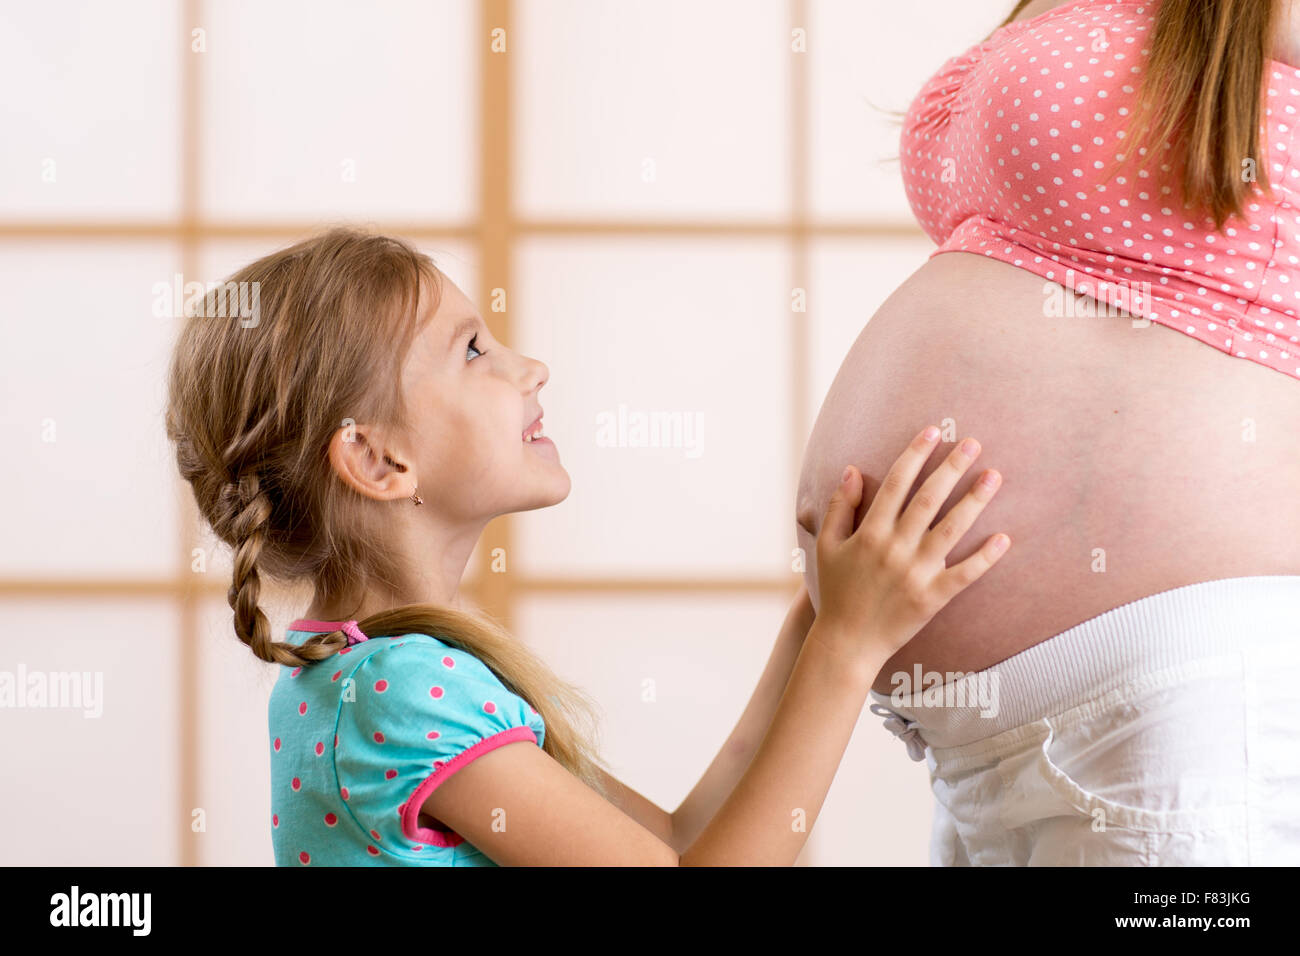 Kid ragazza abbracciando e kooking a madre in stato di gravidanza Foto Stock